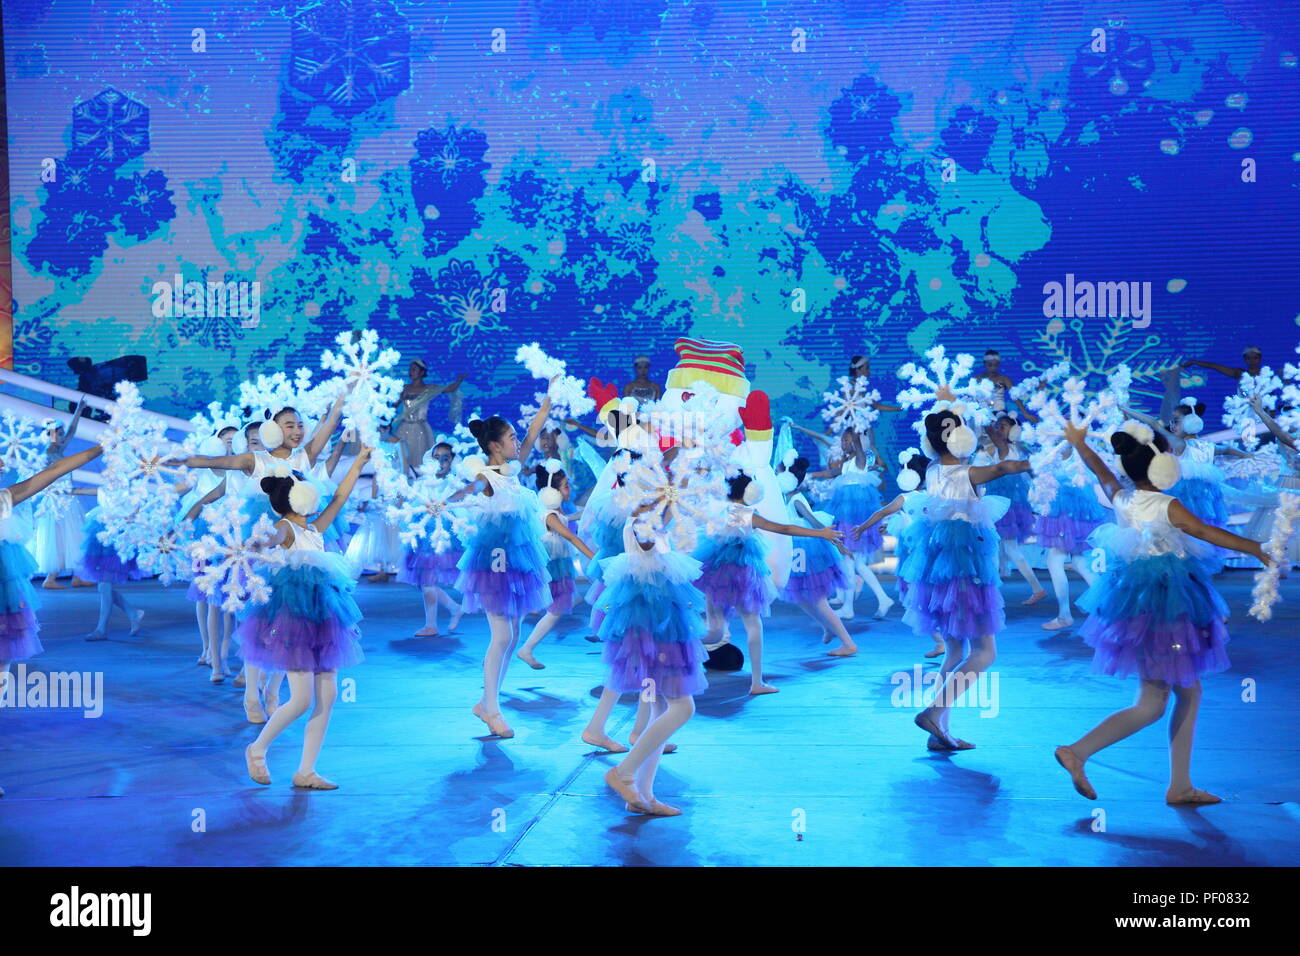 Pechino, Cina, 18 agosto 2018. La cerimonia di apertura della nazionale sport tradizionali si incontrano. Credit:Costfoto/Alamy Live News Foto Stock